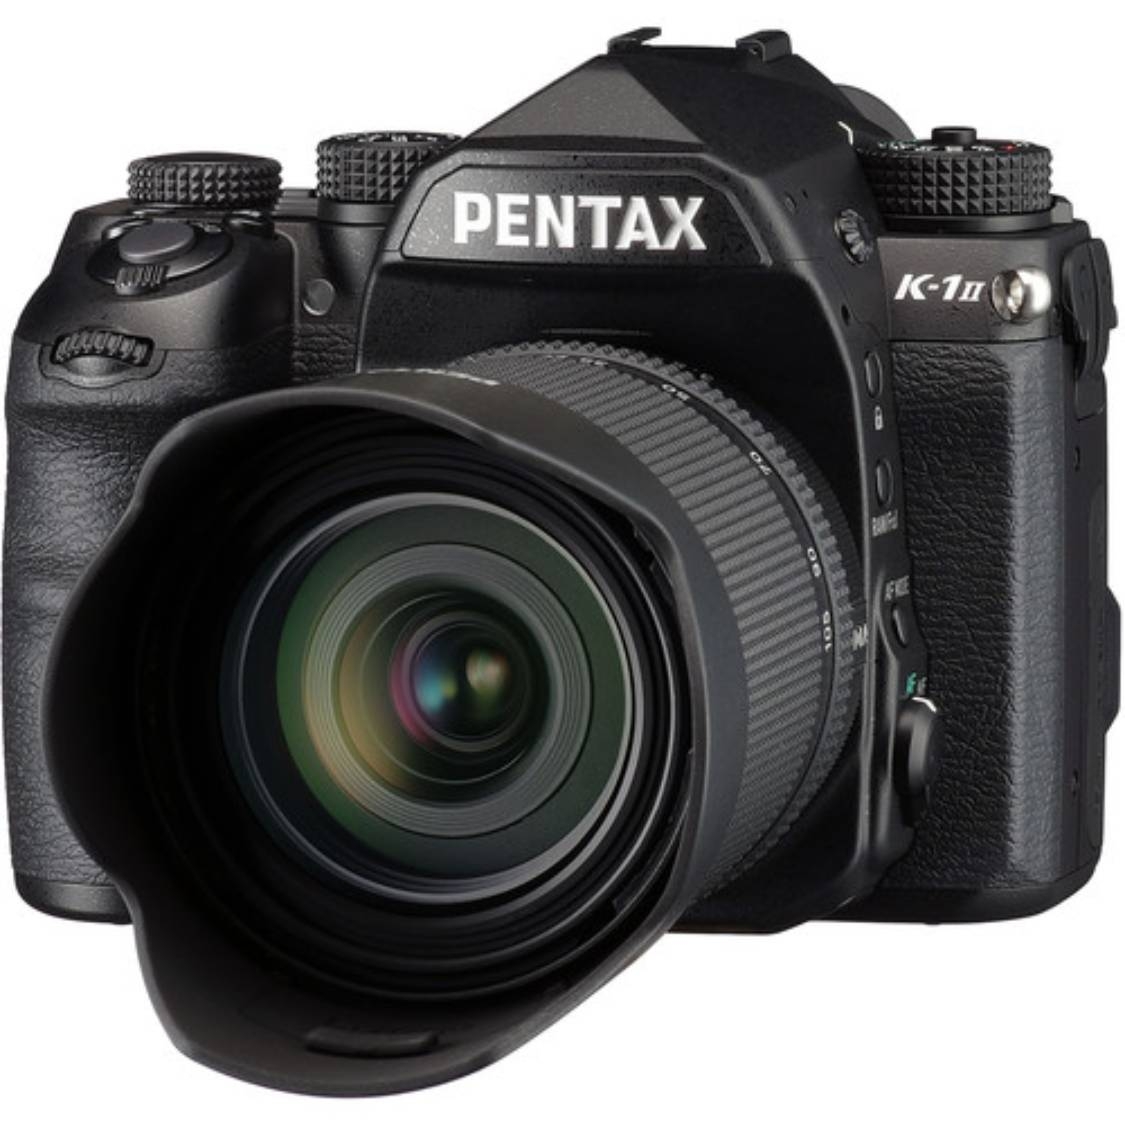 Pentax K-1 Mark II DSLR Camera with 28-105mm WR Lens